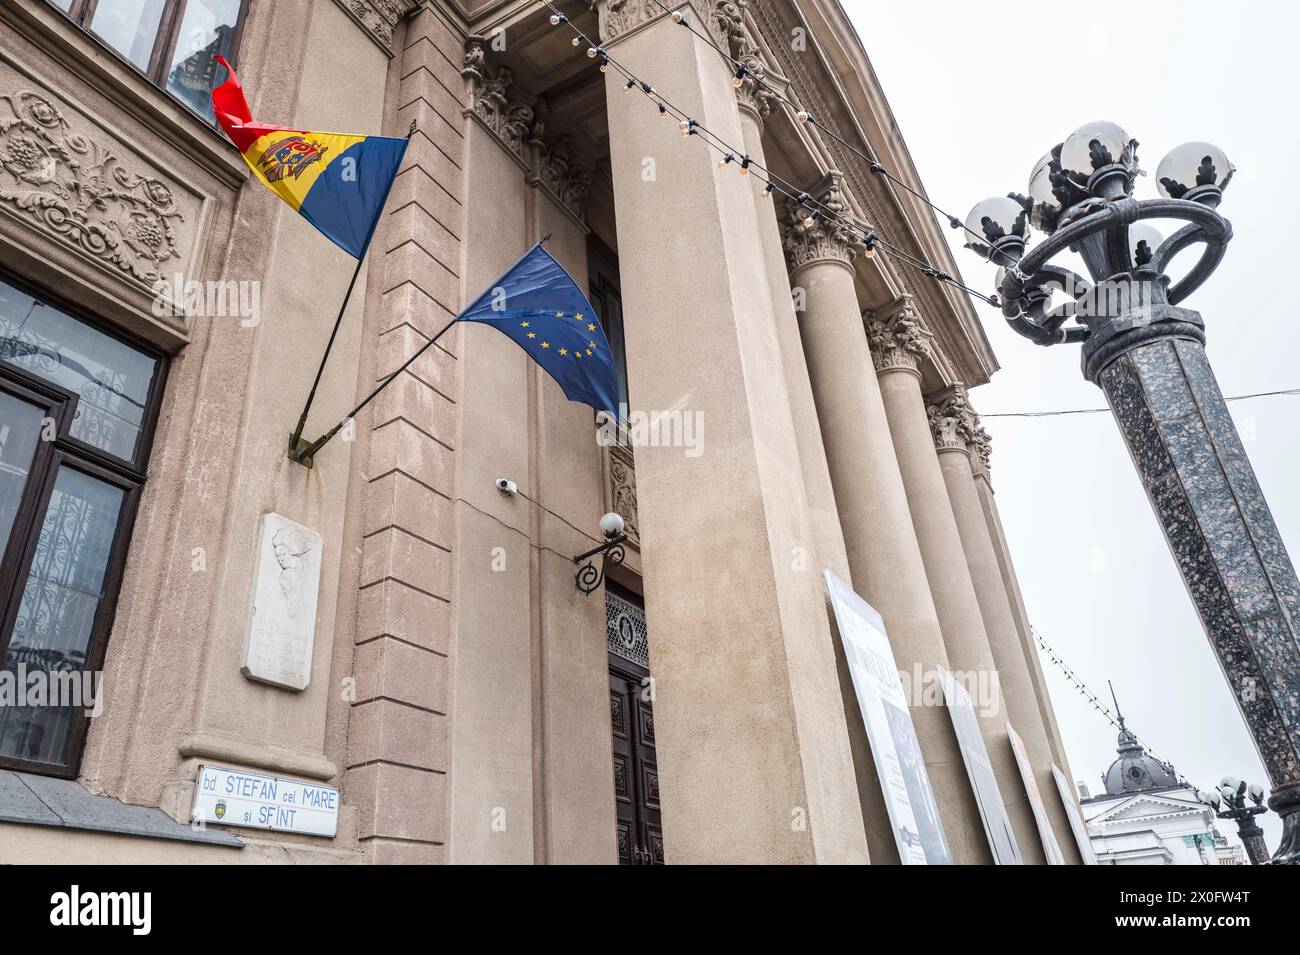 Bandiere moldave ed europee sulle facciate degli edifici ufficiali della capitale. Chisinau. Patricia Huchot-Boissier / Collectif DyF Foto Stock